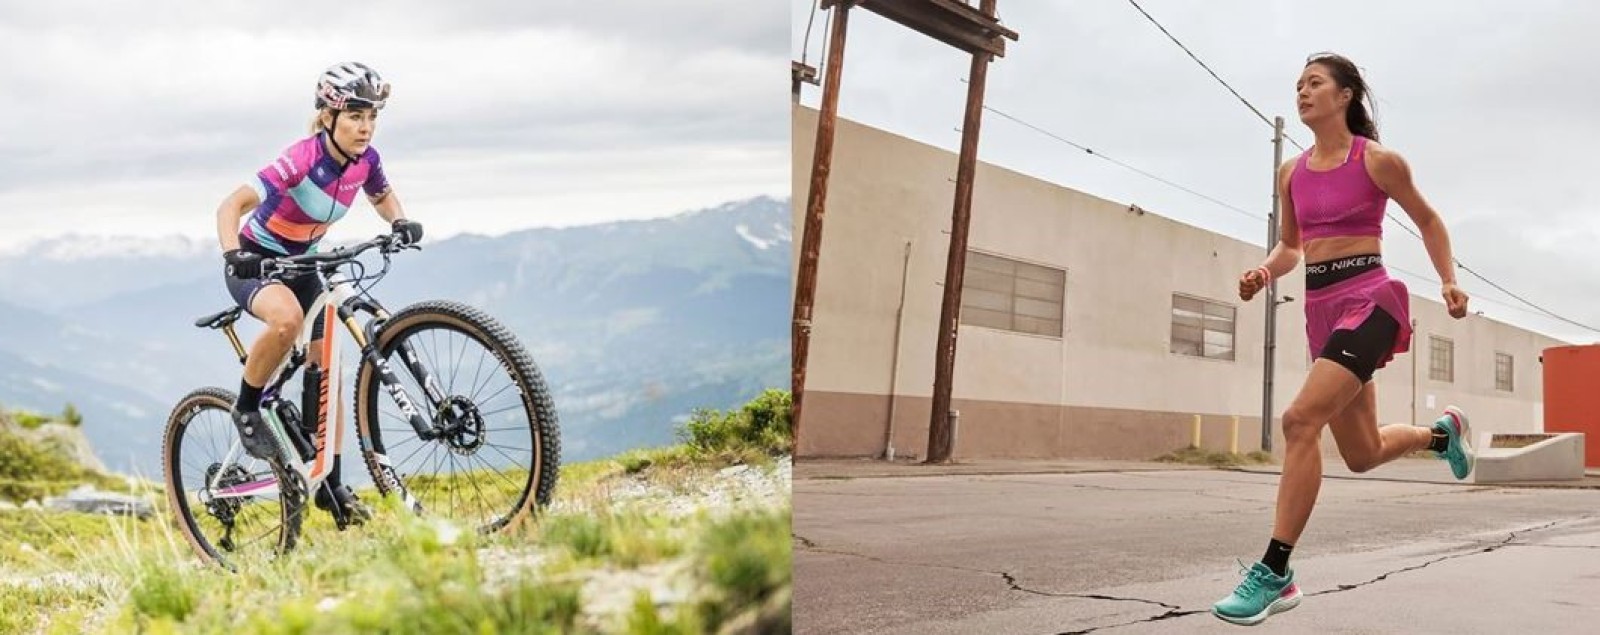 Mountain bike, beneficios para la salud - Ejercicio y deporte